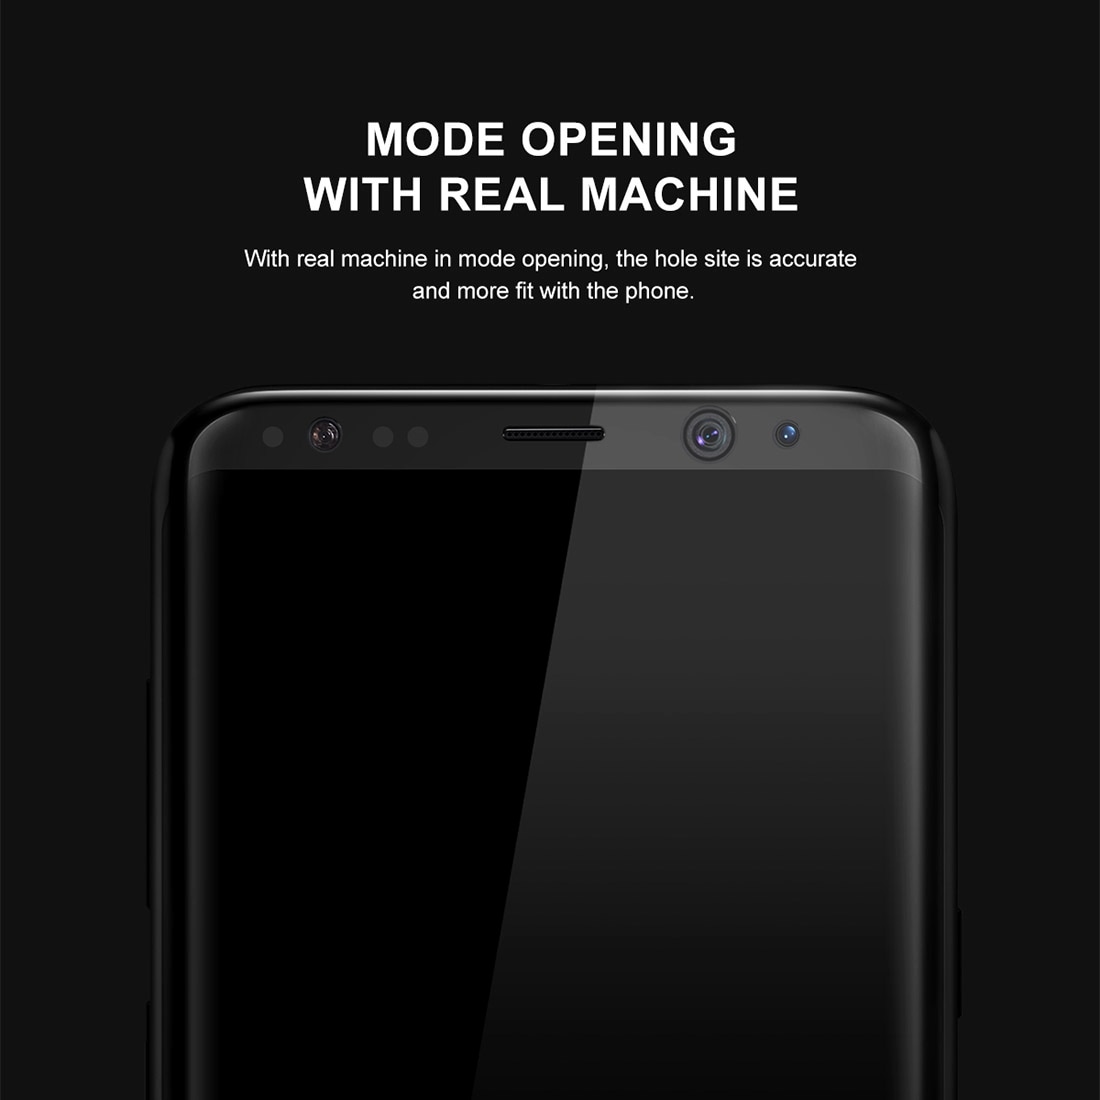 Skärmskydd i härdat 3D glas Samsung Galaxy S8 Plus